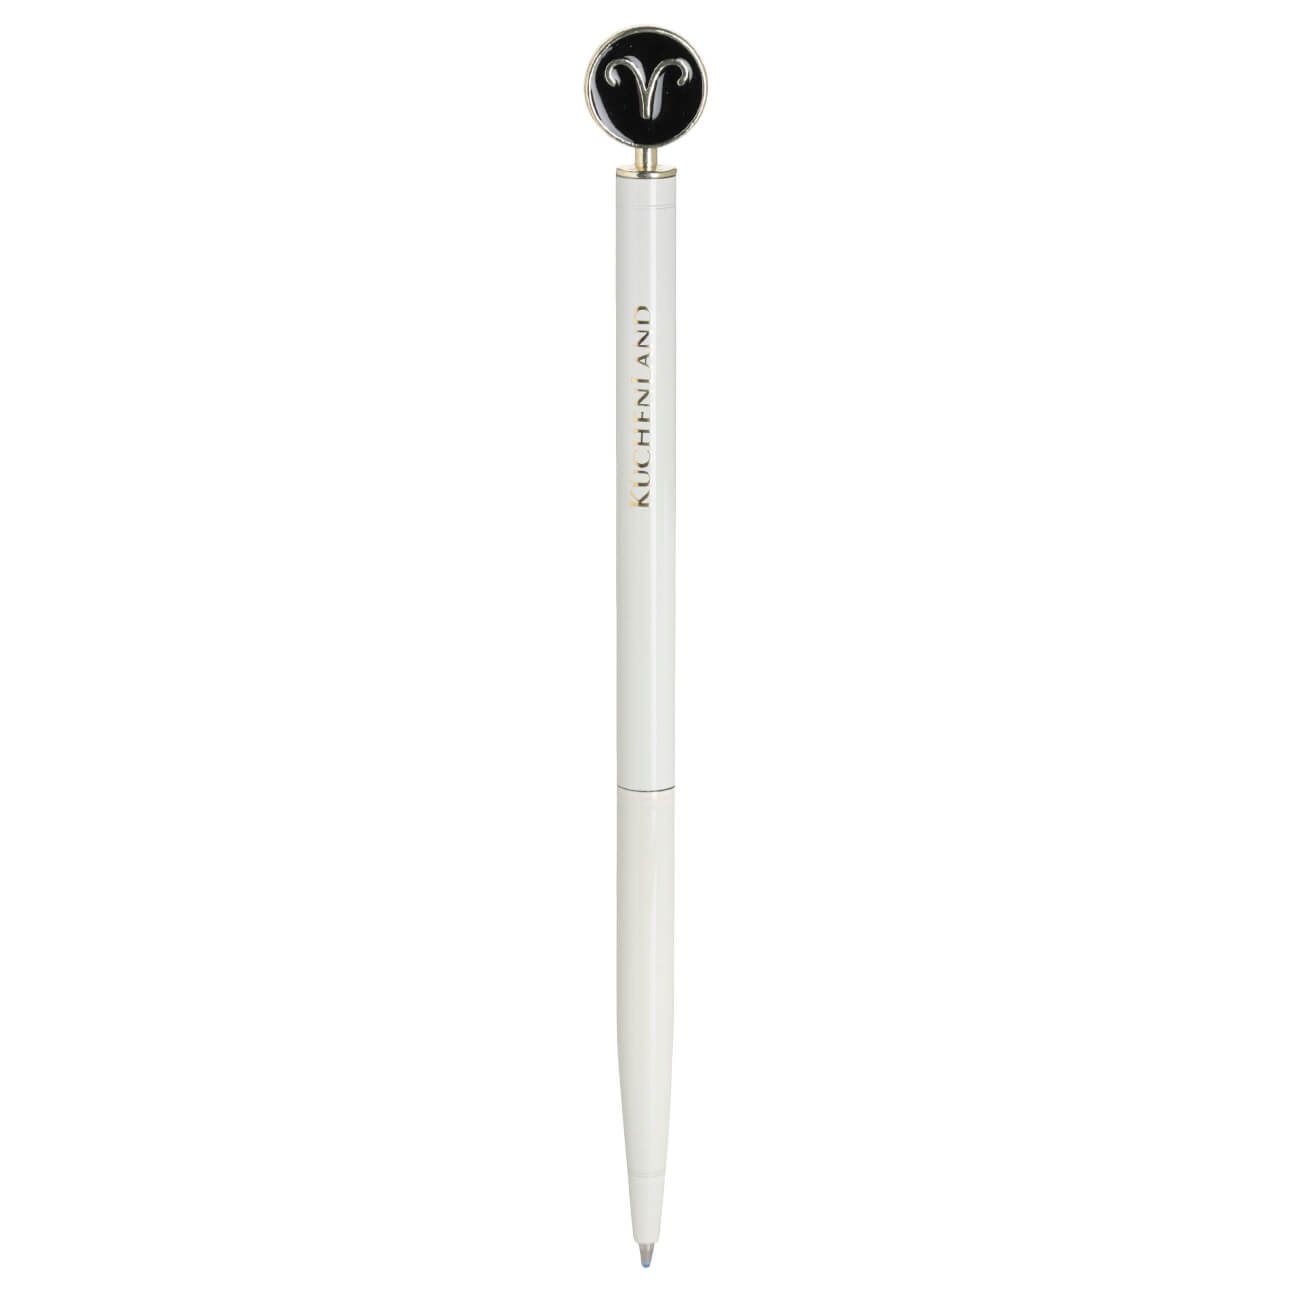 Ручка шариковая, 15 см, с фигуркой, сталь, молочно-золотистая, Овен, Zodiac ручка подарочная